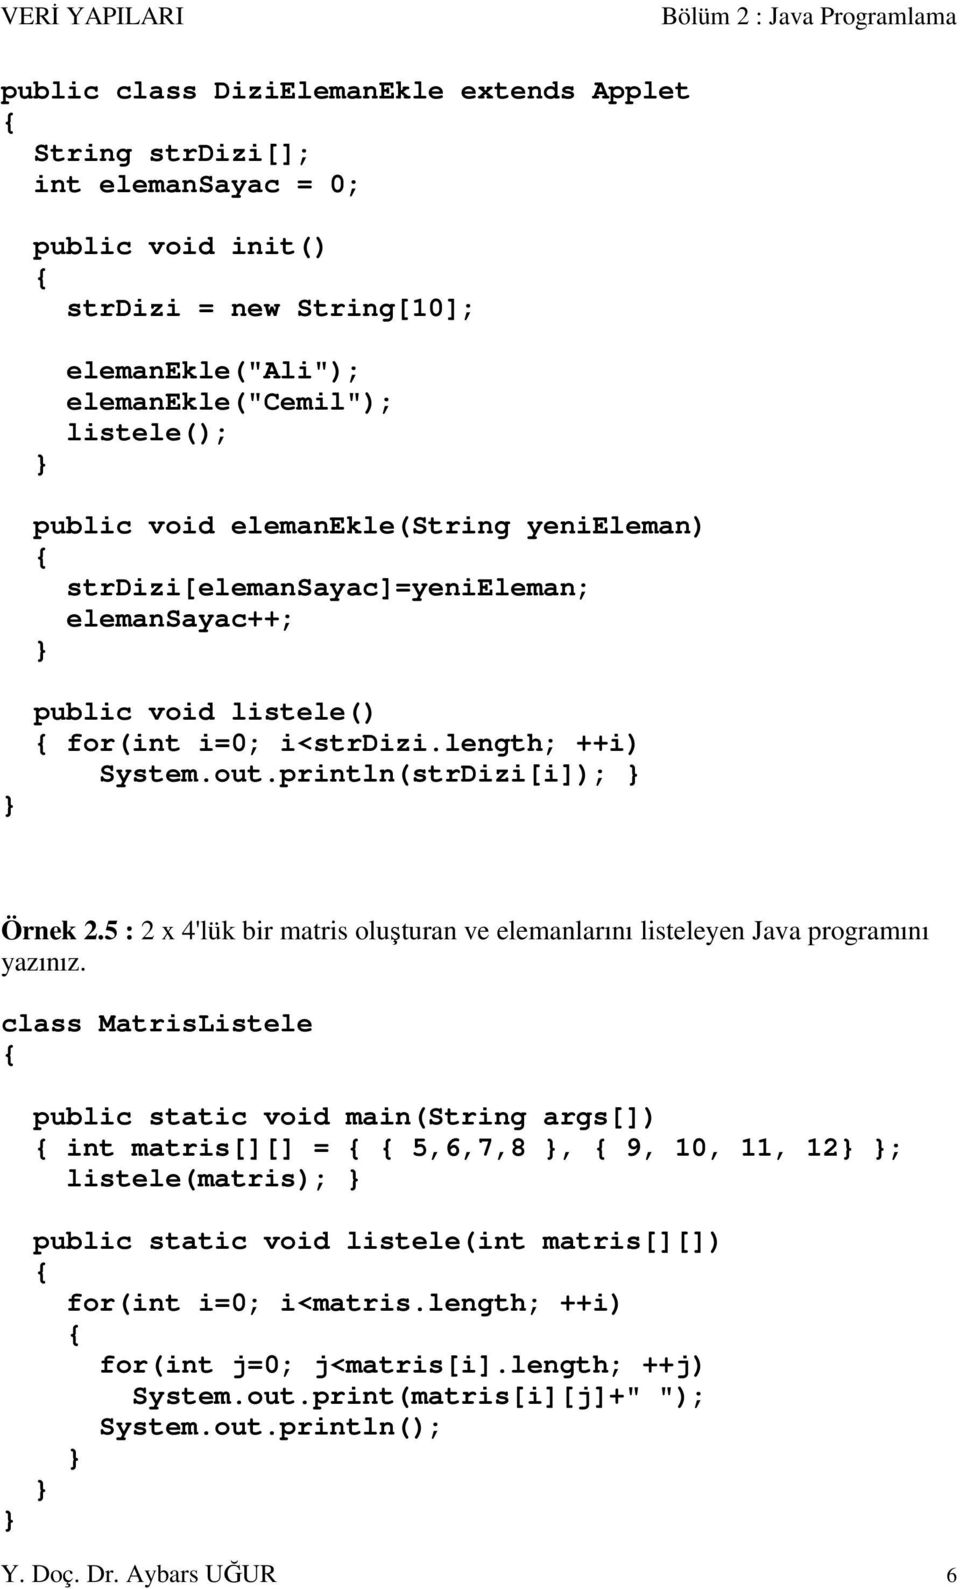 5 : 2 x 4'lük bir matris oluşturan ve elemanlarını listeleyen Java programını yazınız.